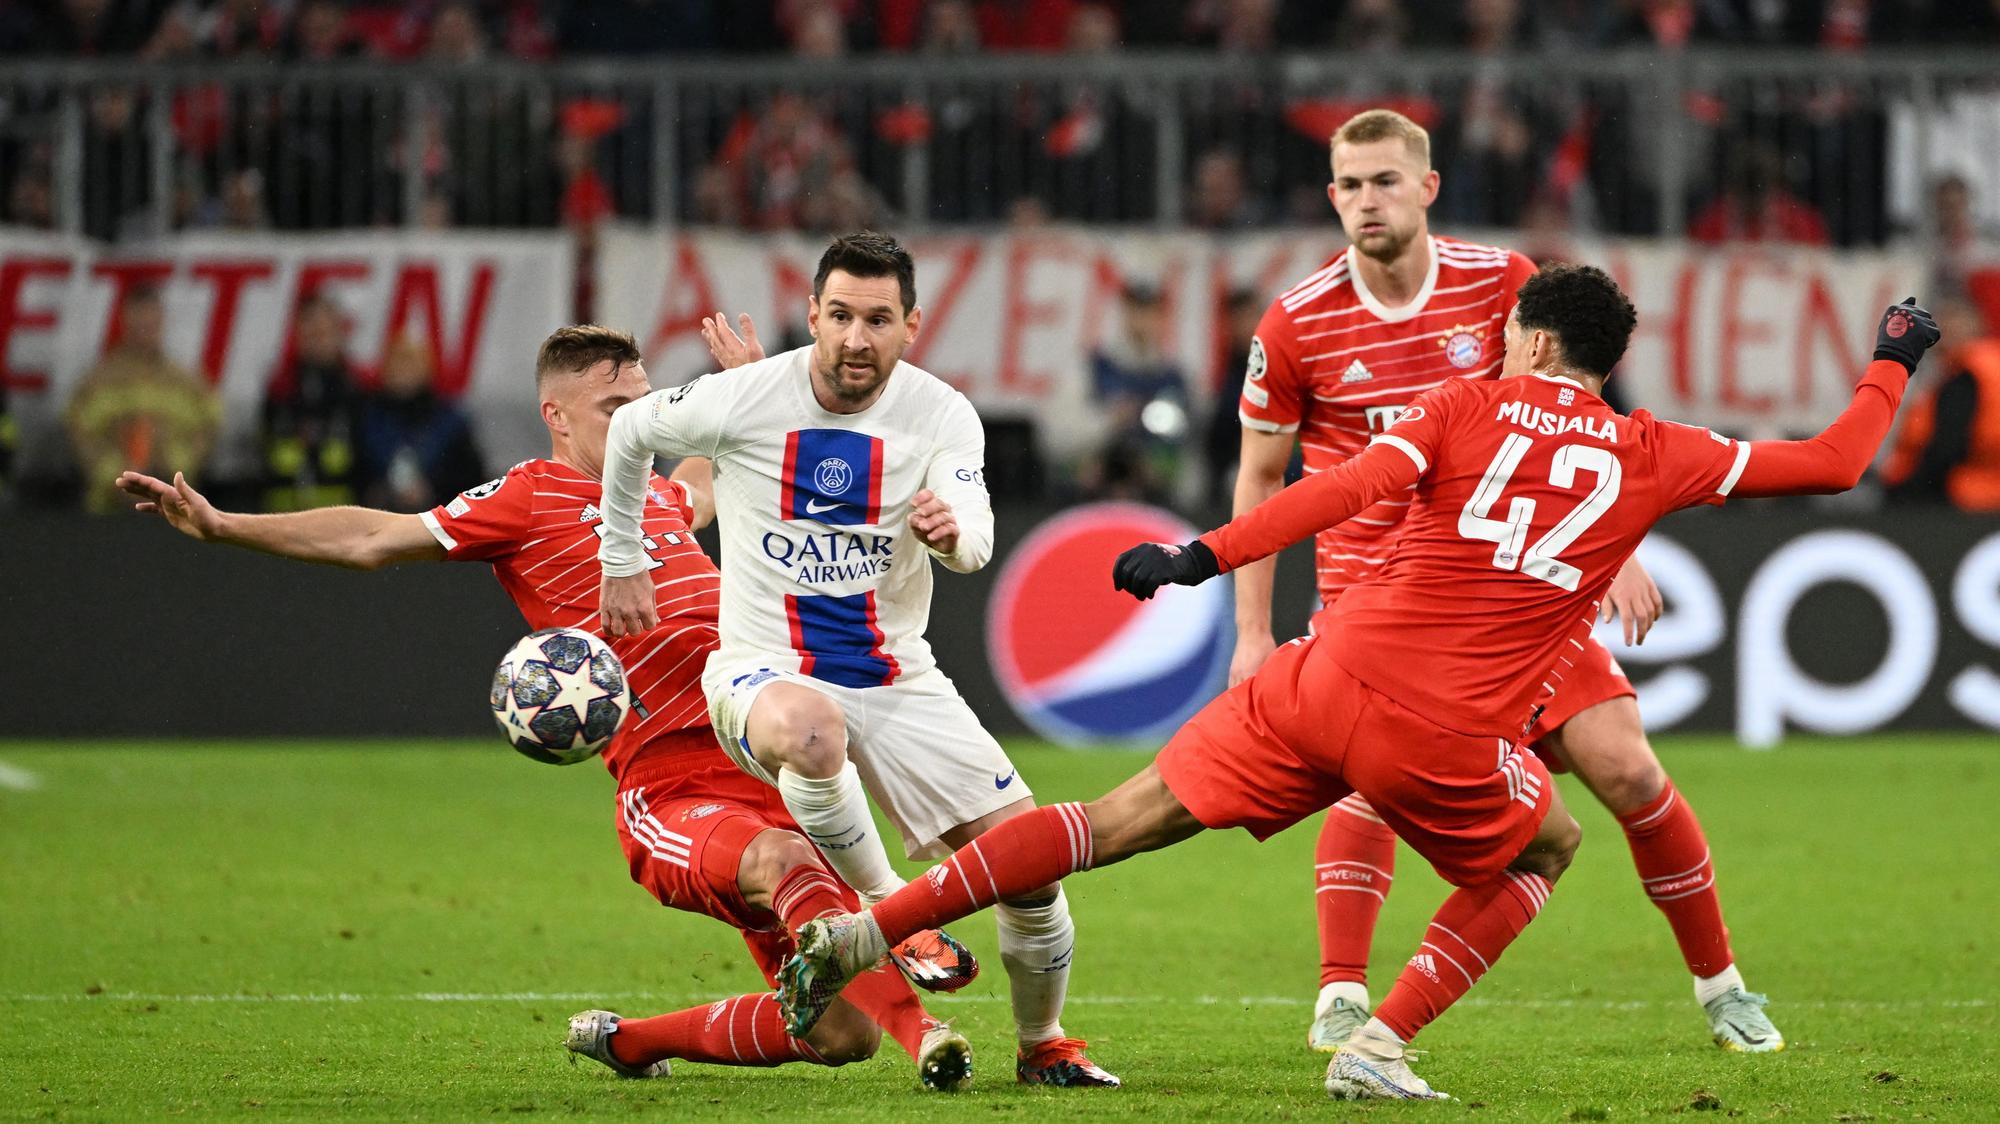 Liga majstrov - osemfinále: Bayern Mníchov - Paríž St-Germain 2:0 | Šport.sk